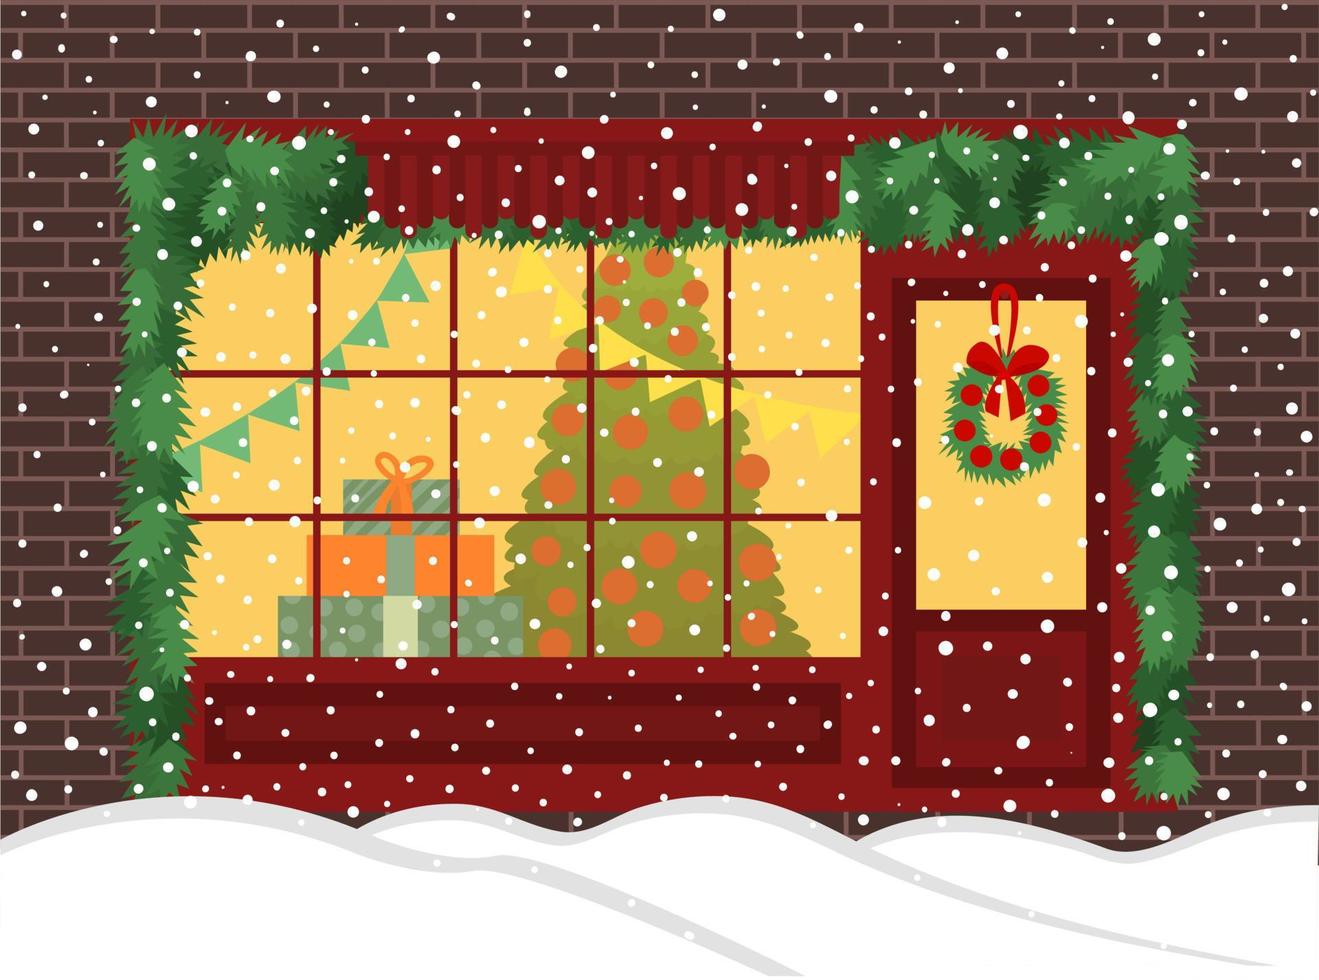 jul affär vektor illustration. vinter- jul affär fönster på gata med tall och snö. söt dekor krans på dörr. platt illustration.